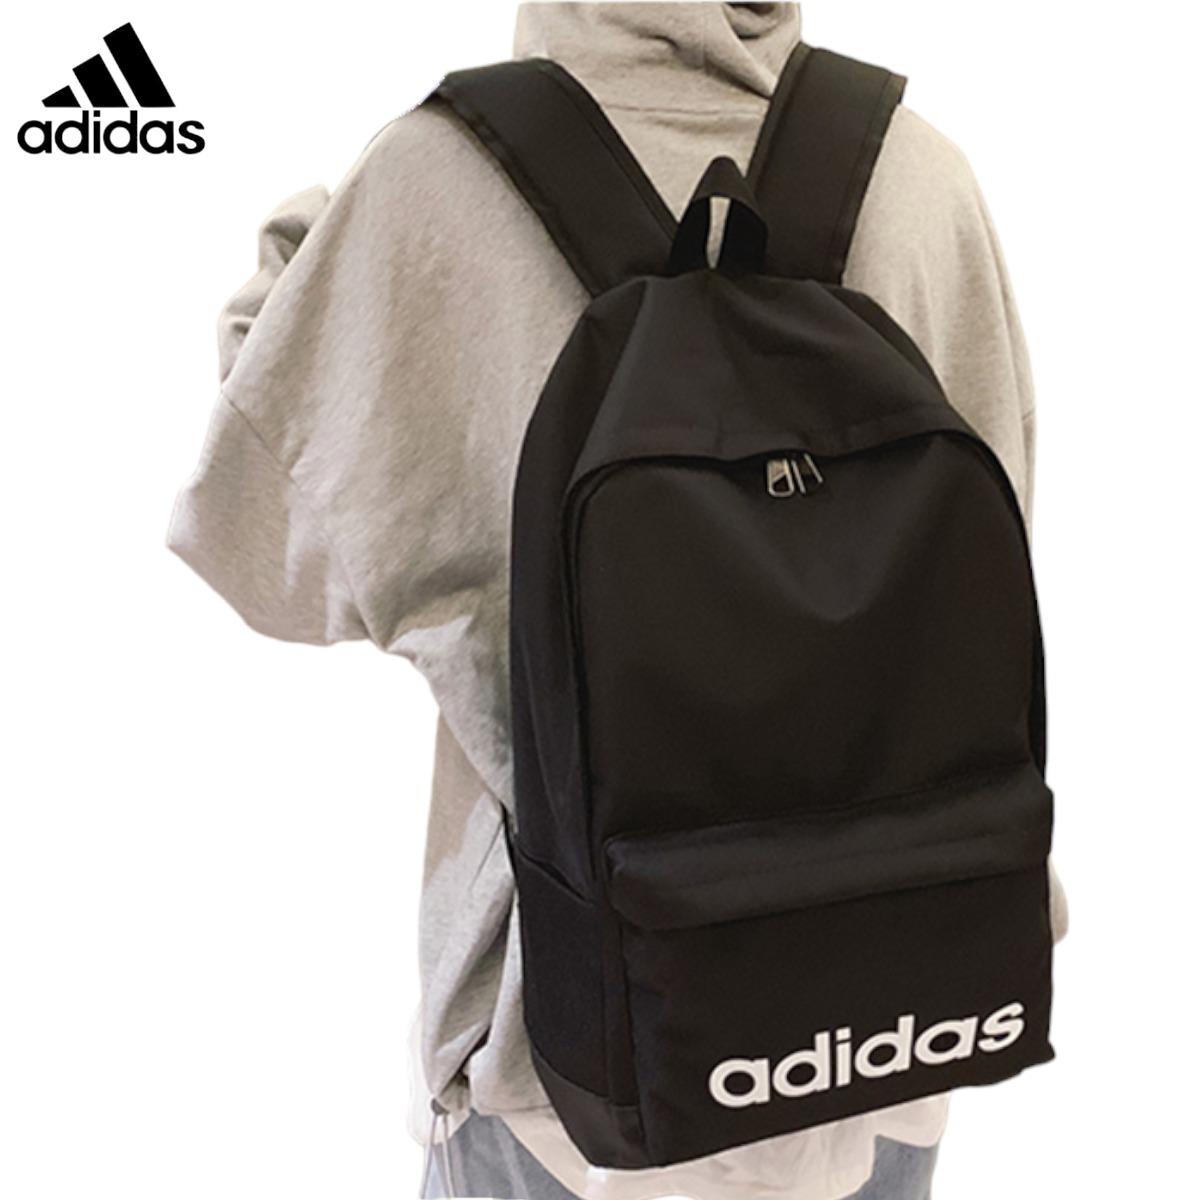 Adidas-UNISEX-classic-BackPack-Extra-Large-FL3716-16.jpg